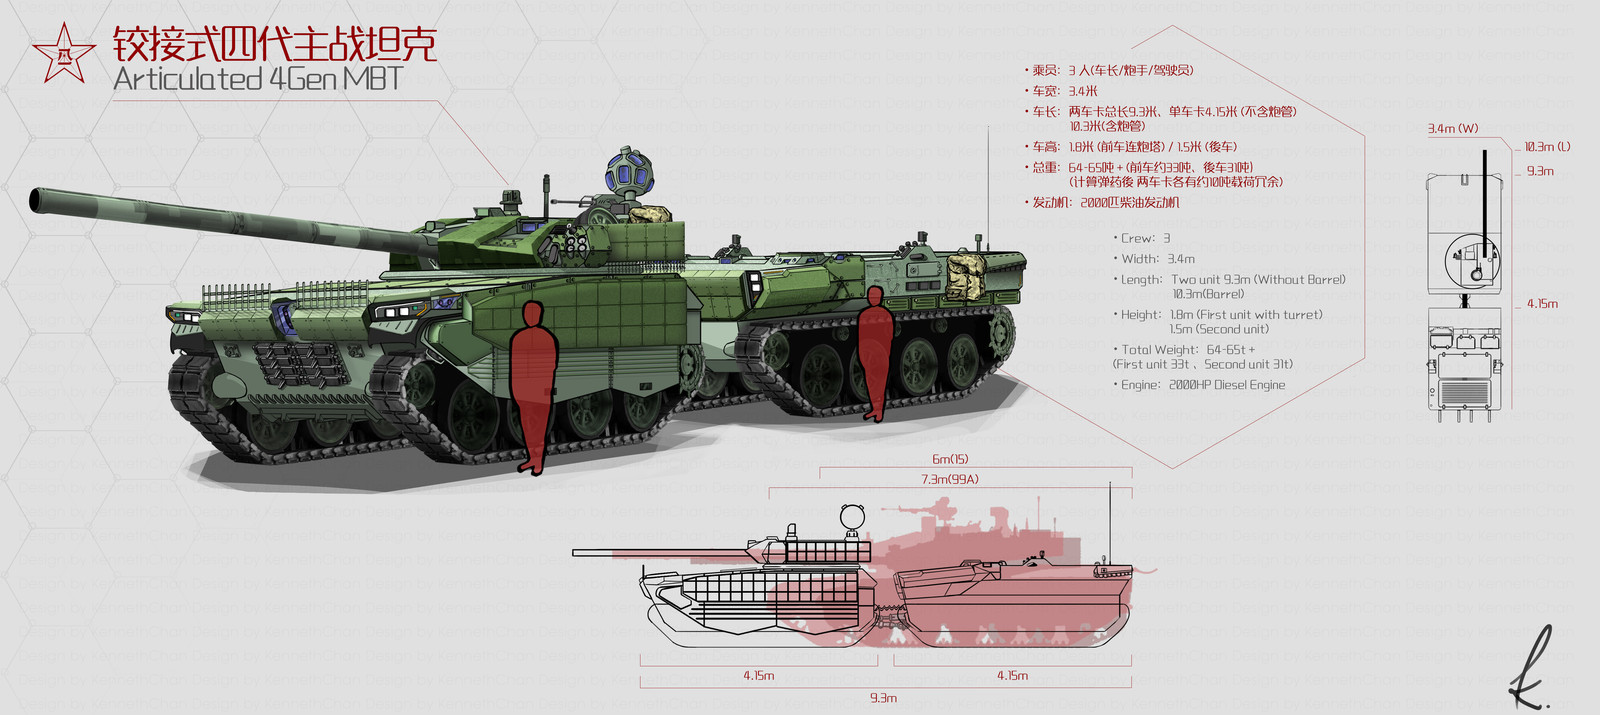 Articulated 4 Gen Main Battle Tank